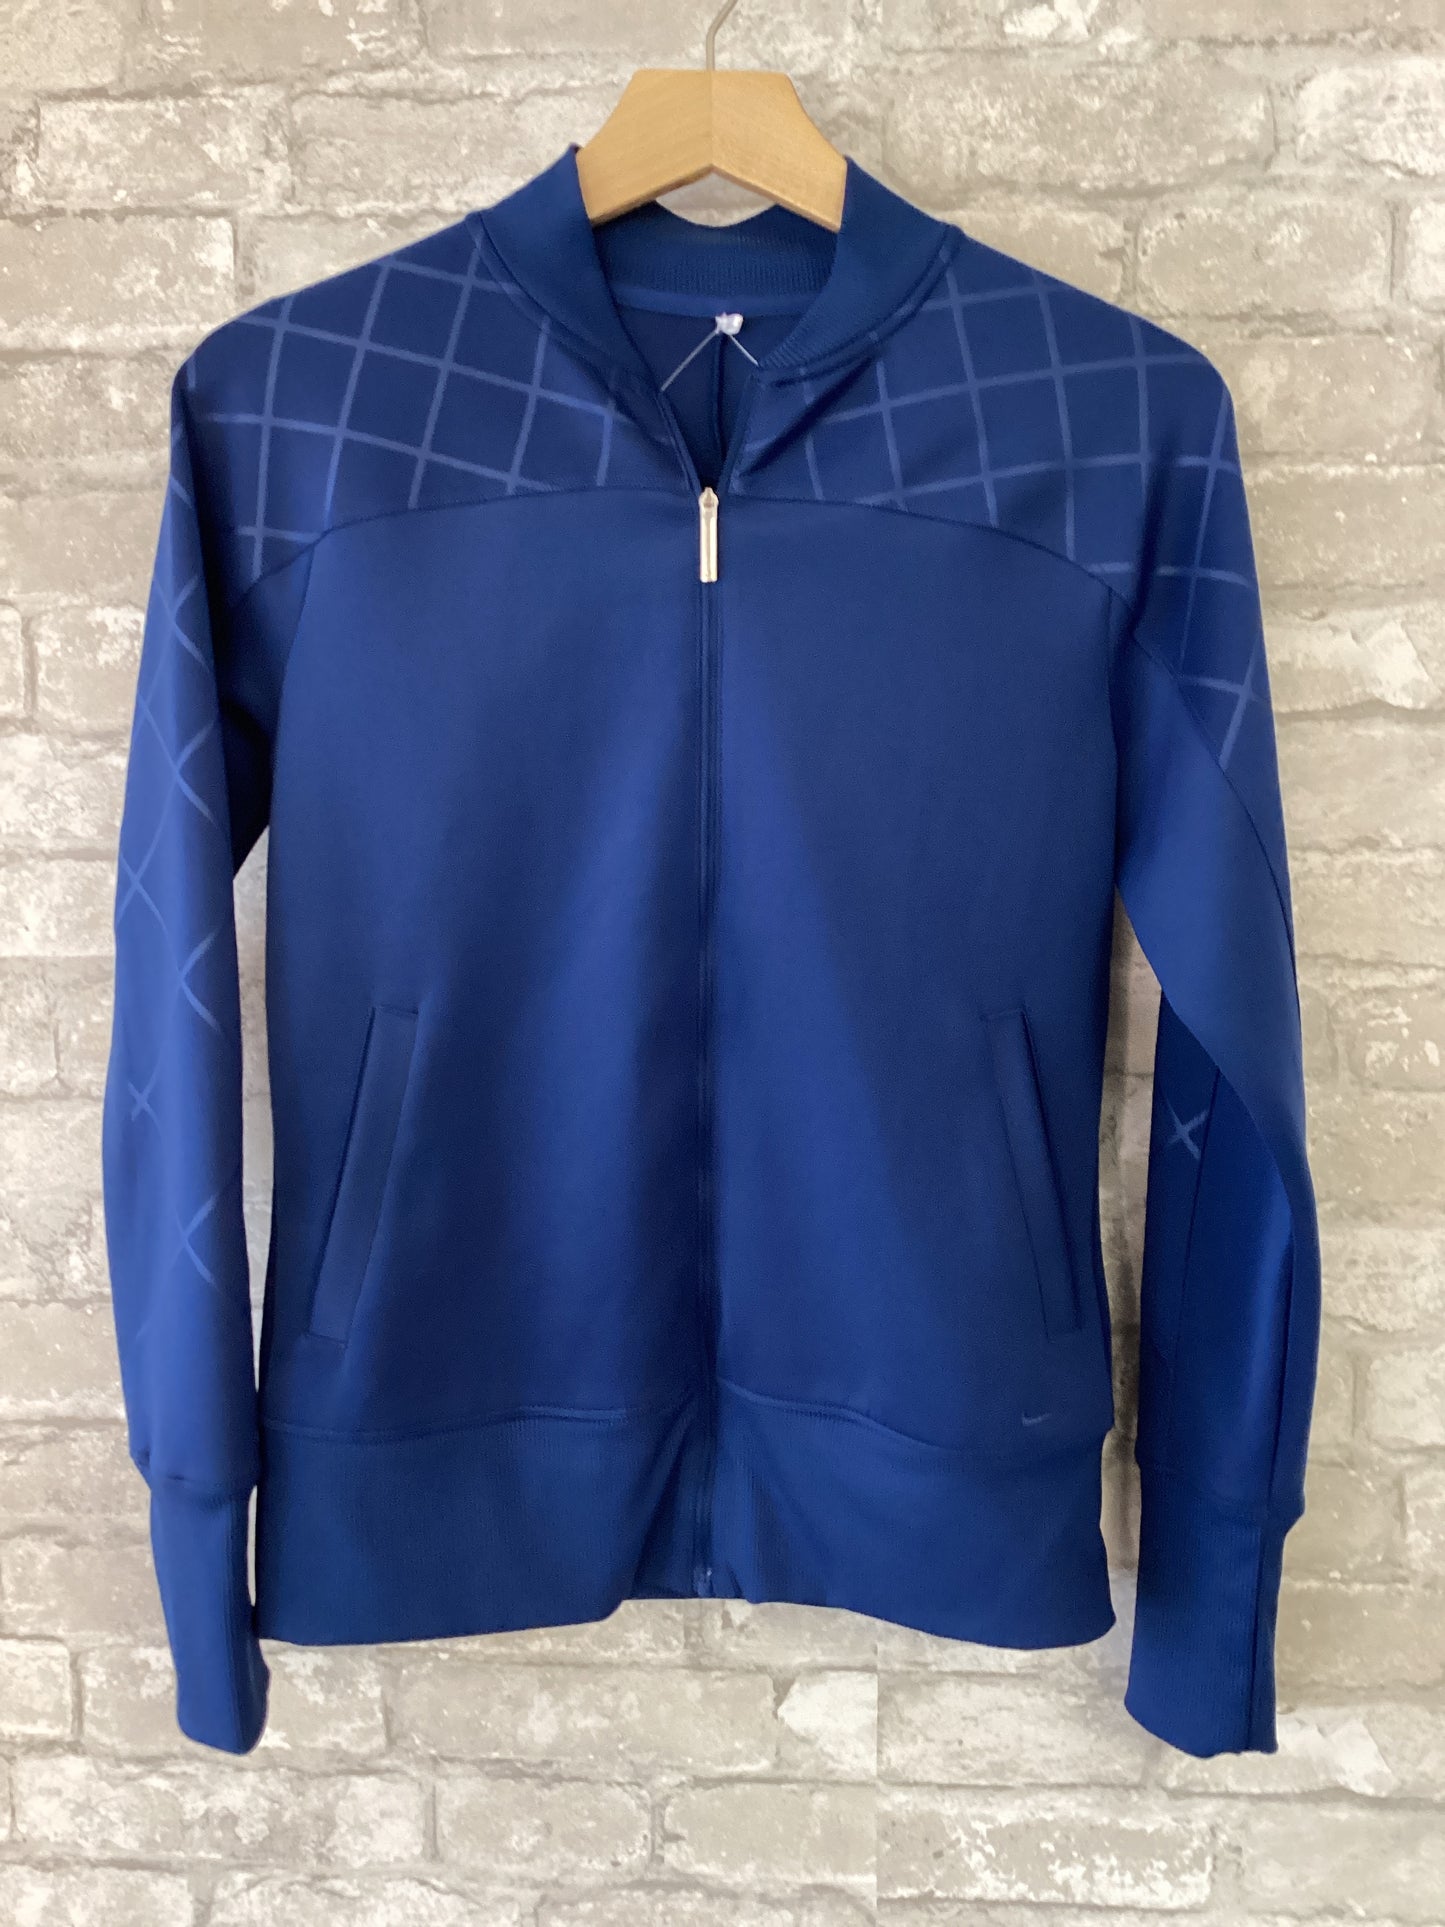 Nike Golf Size S Blue Jacket